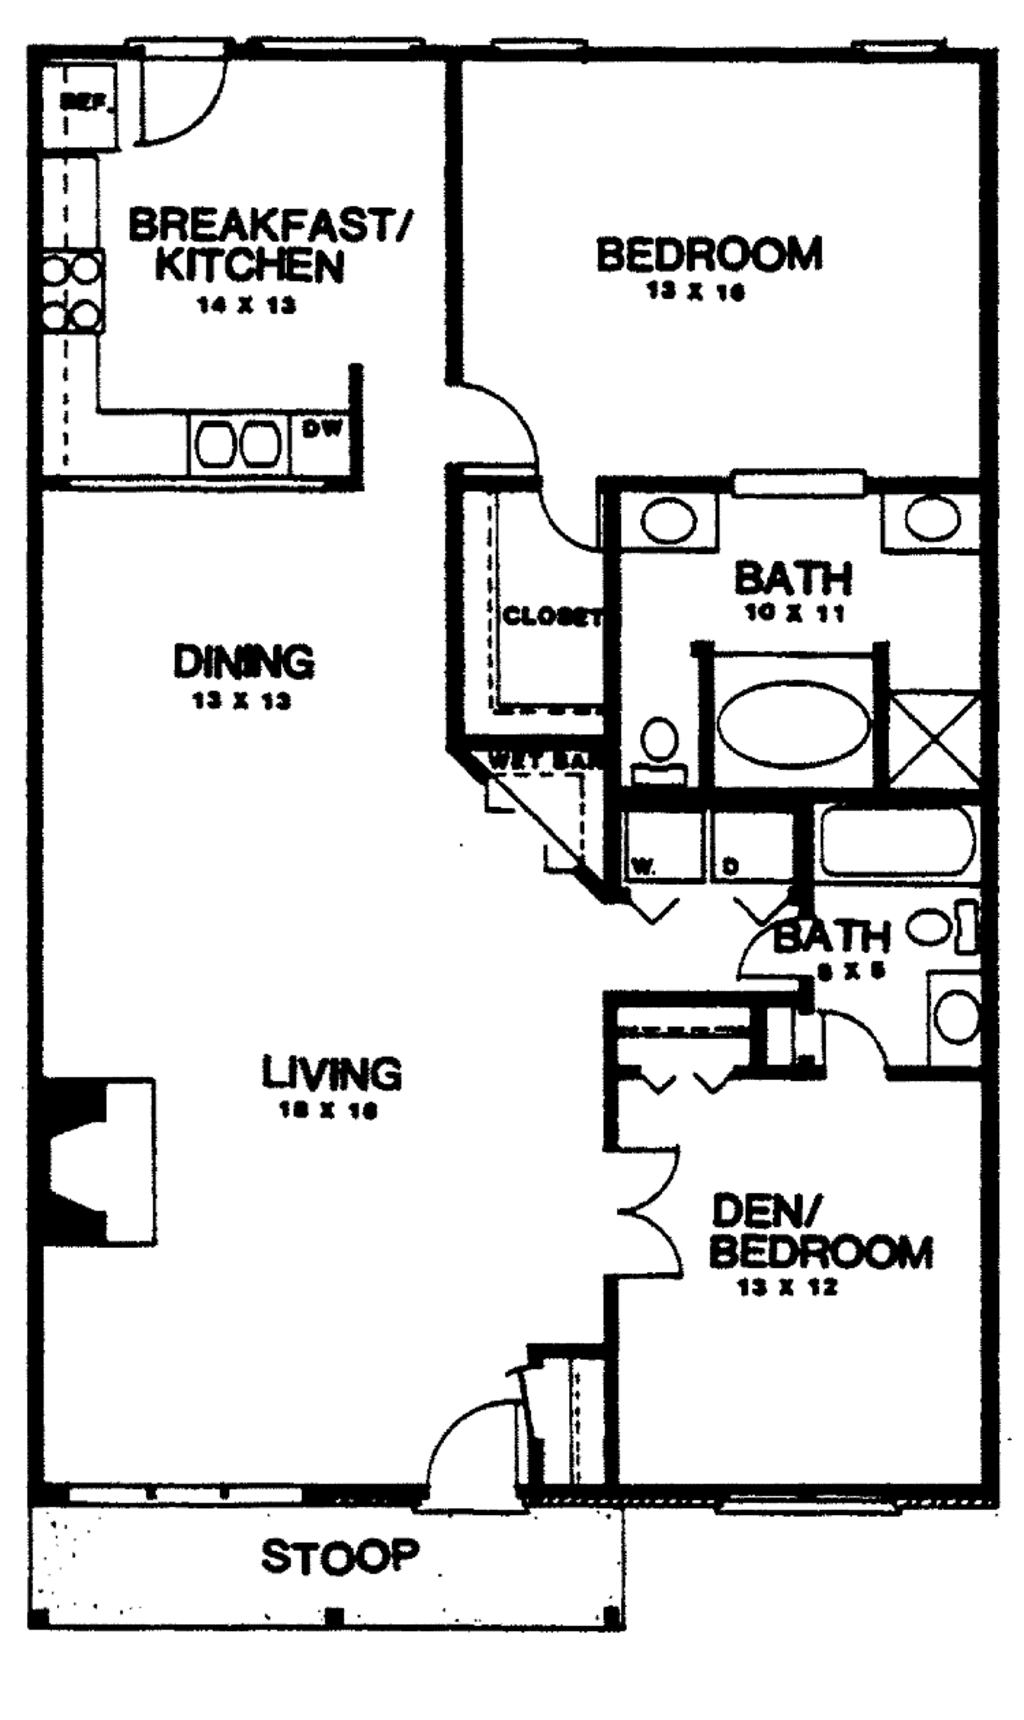 2 bedroom shared bathroom layout